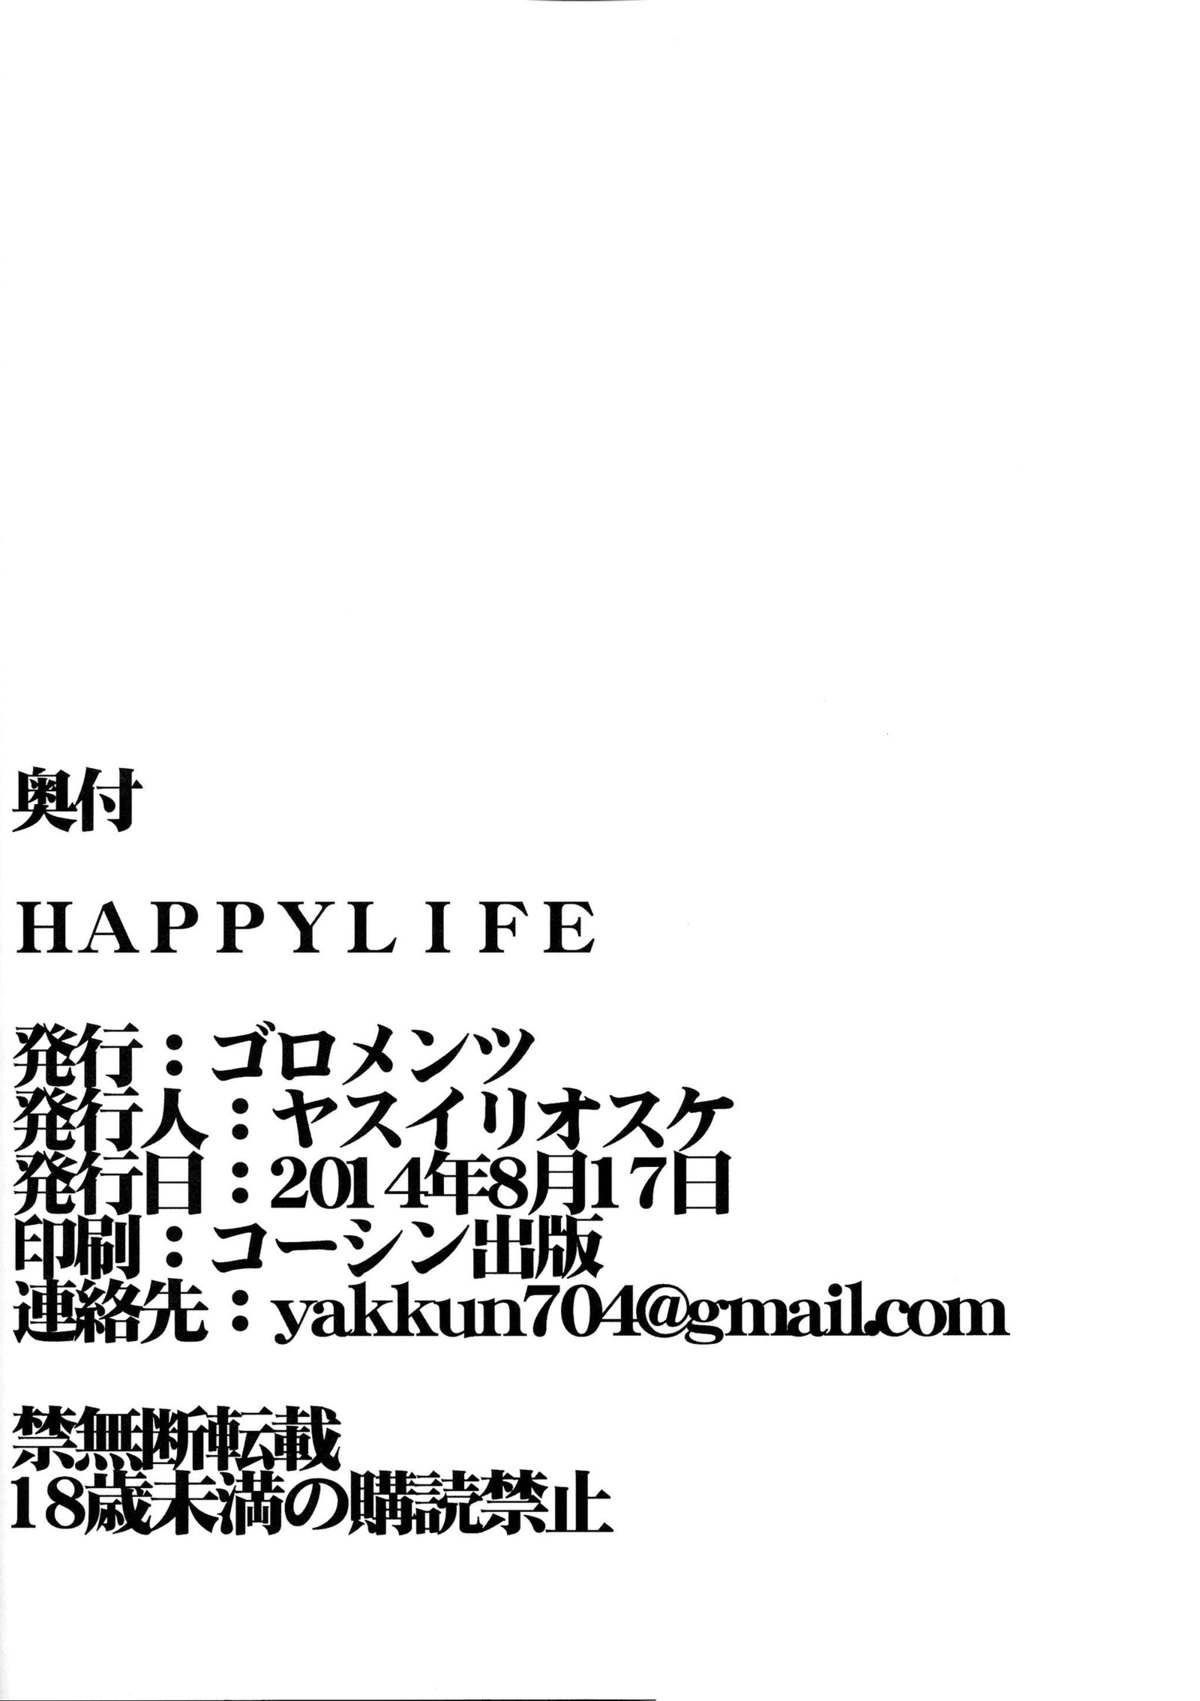 HAPPY LIFE 34